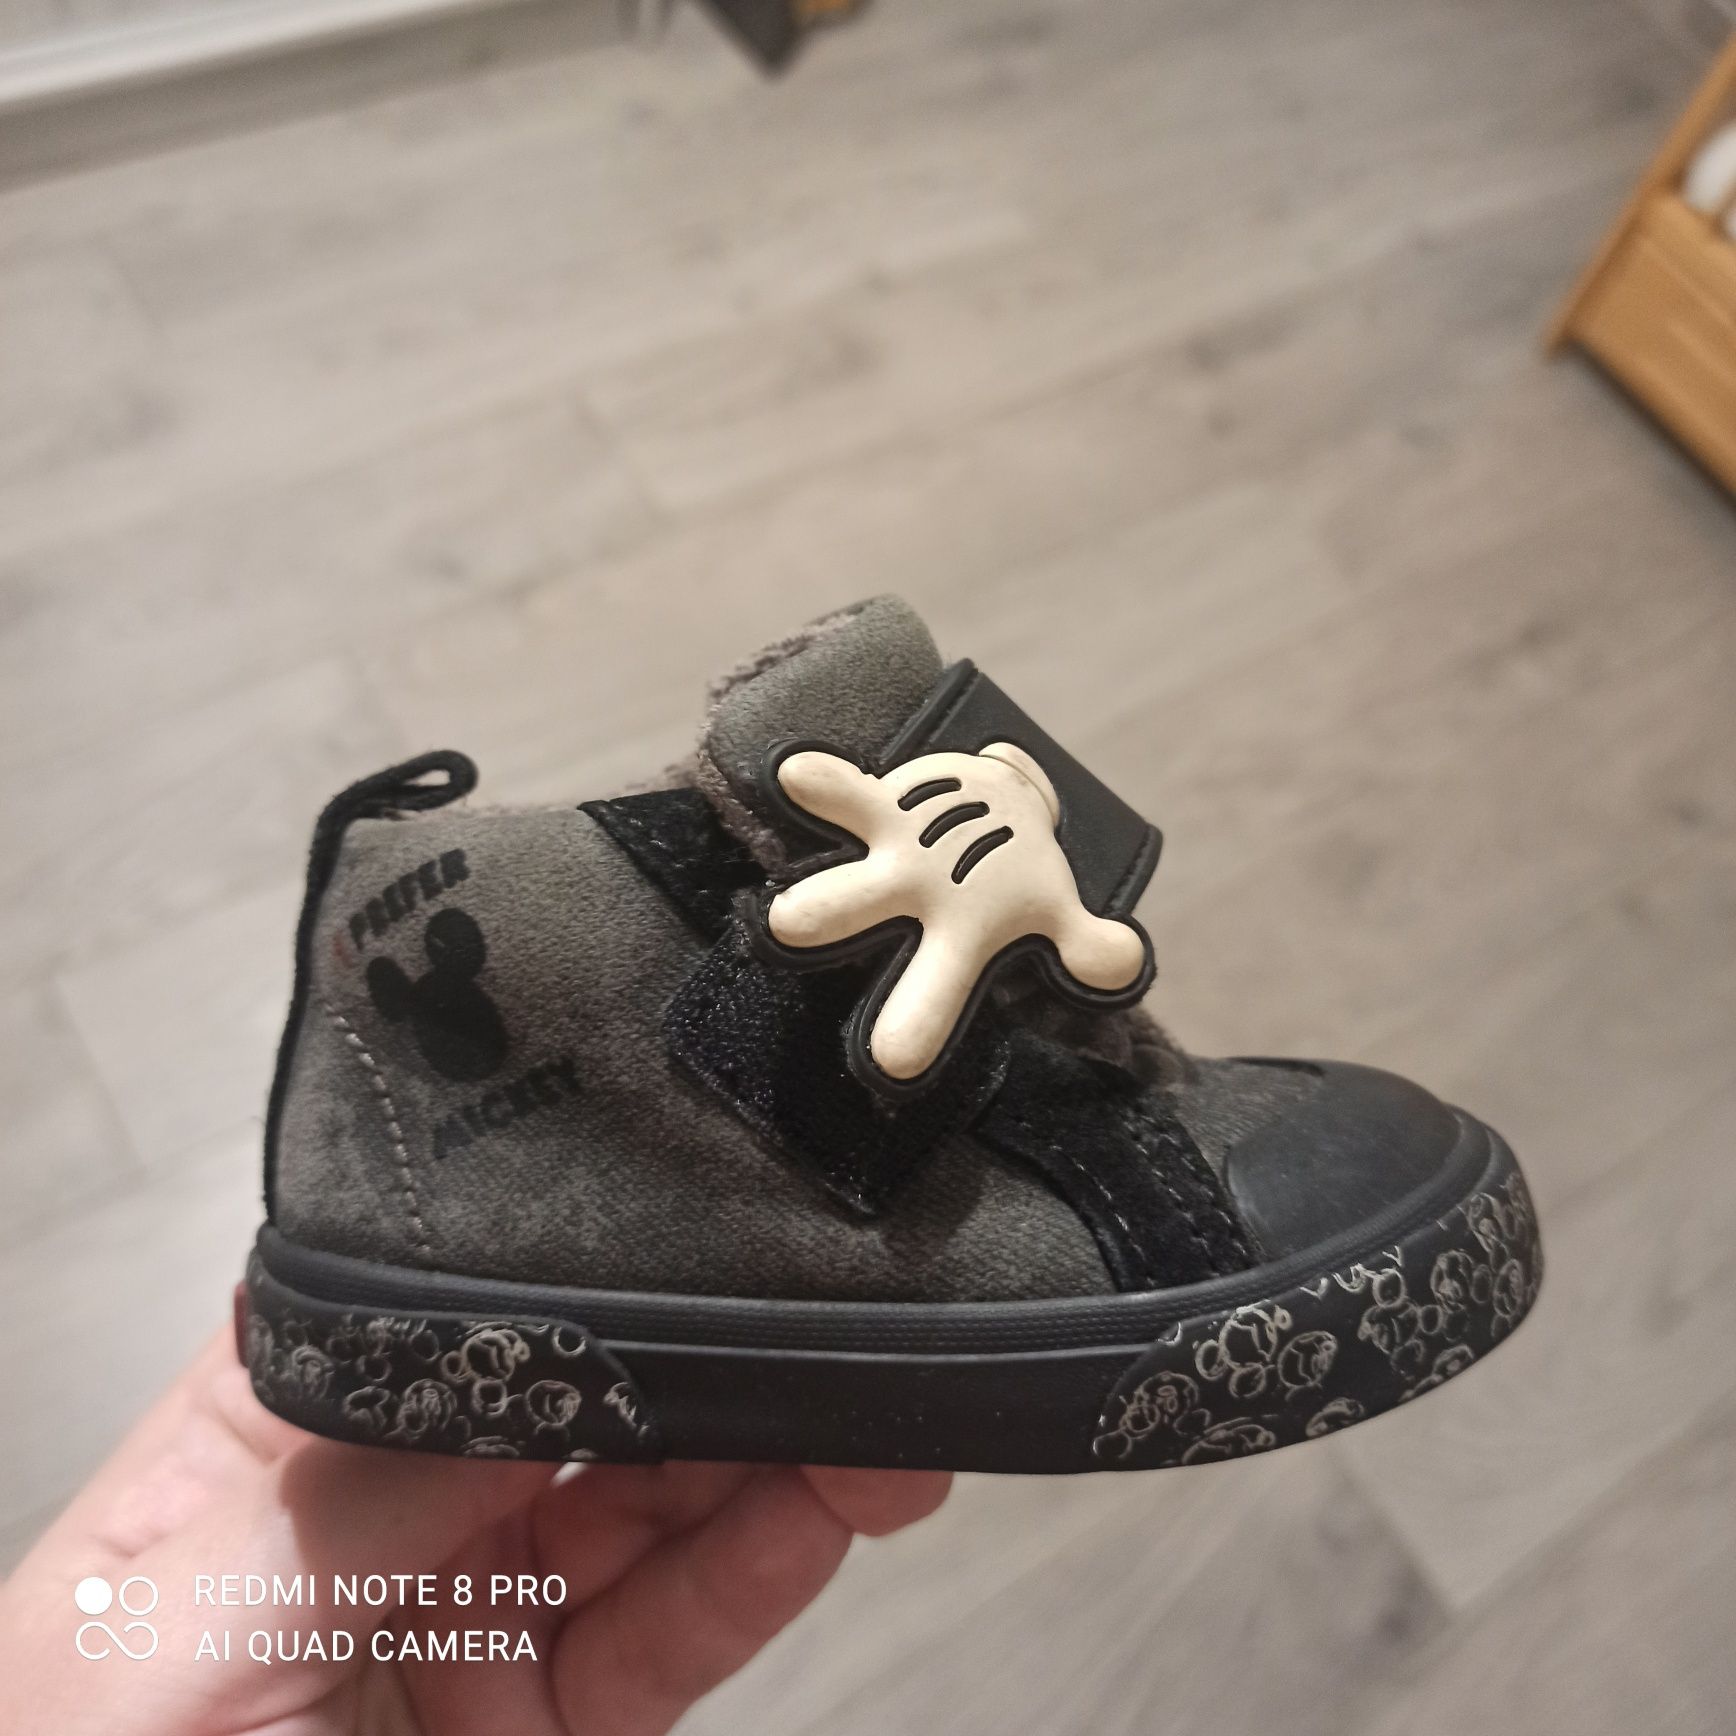 Buty buciki dla chłopca ZARA r. 20 Myszka Miki dł. wkł 14,5 cm